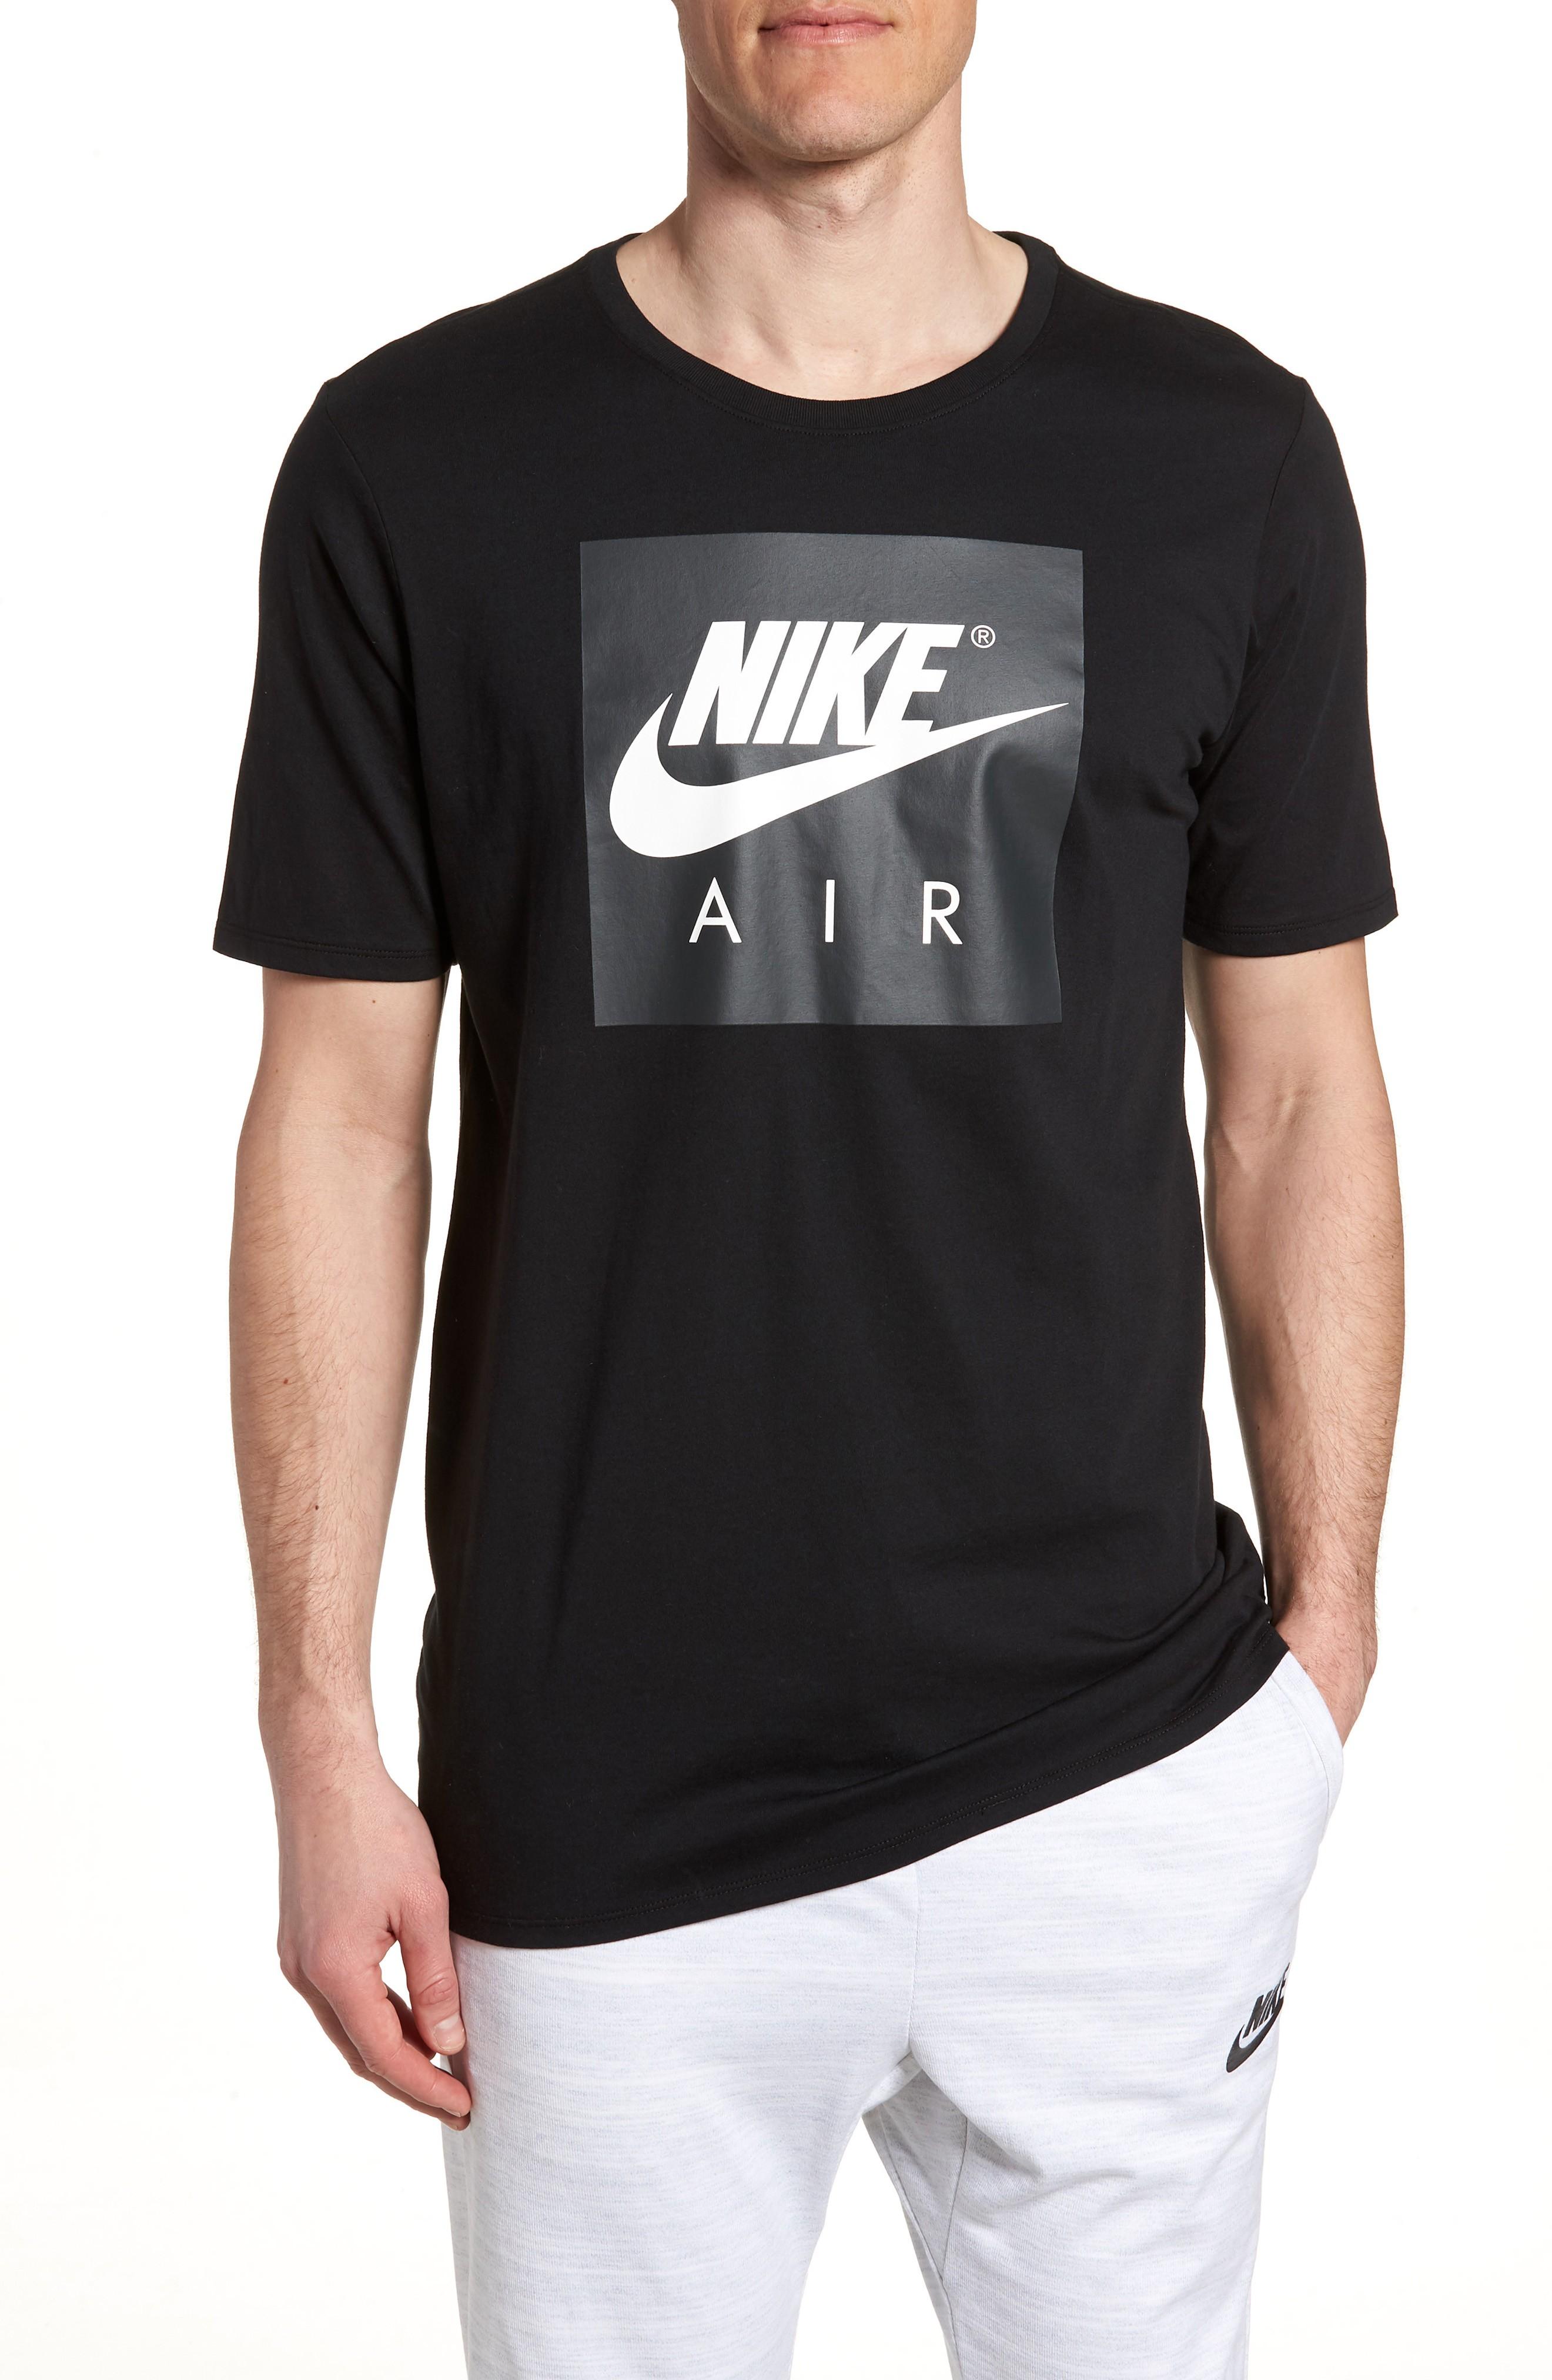 nike air box logo t shirt white 